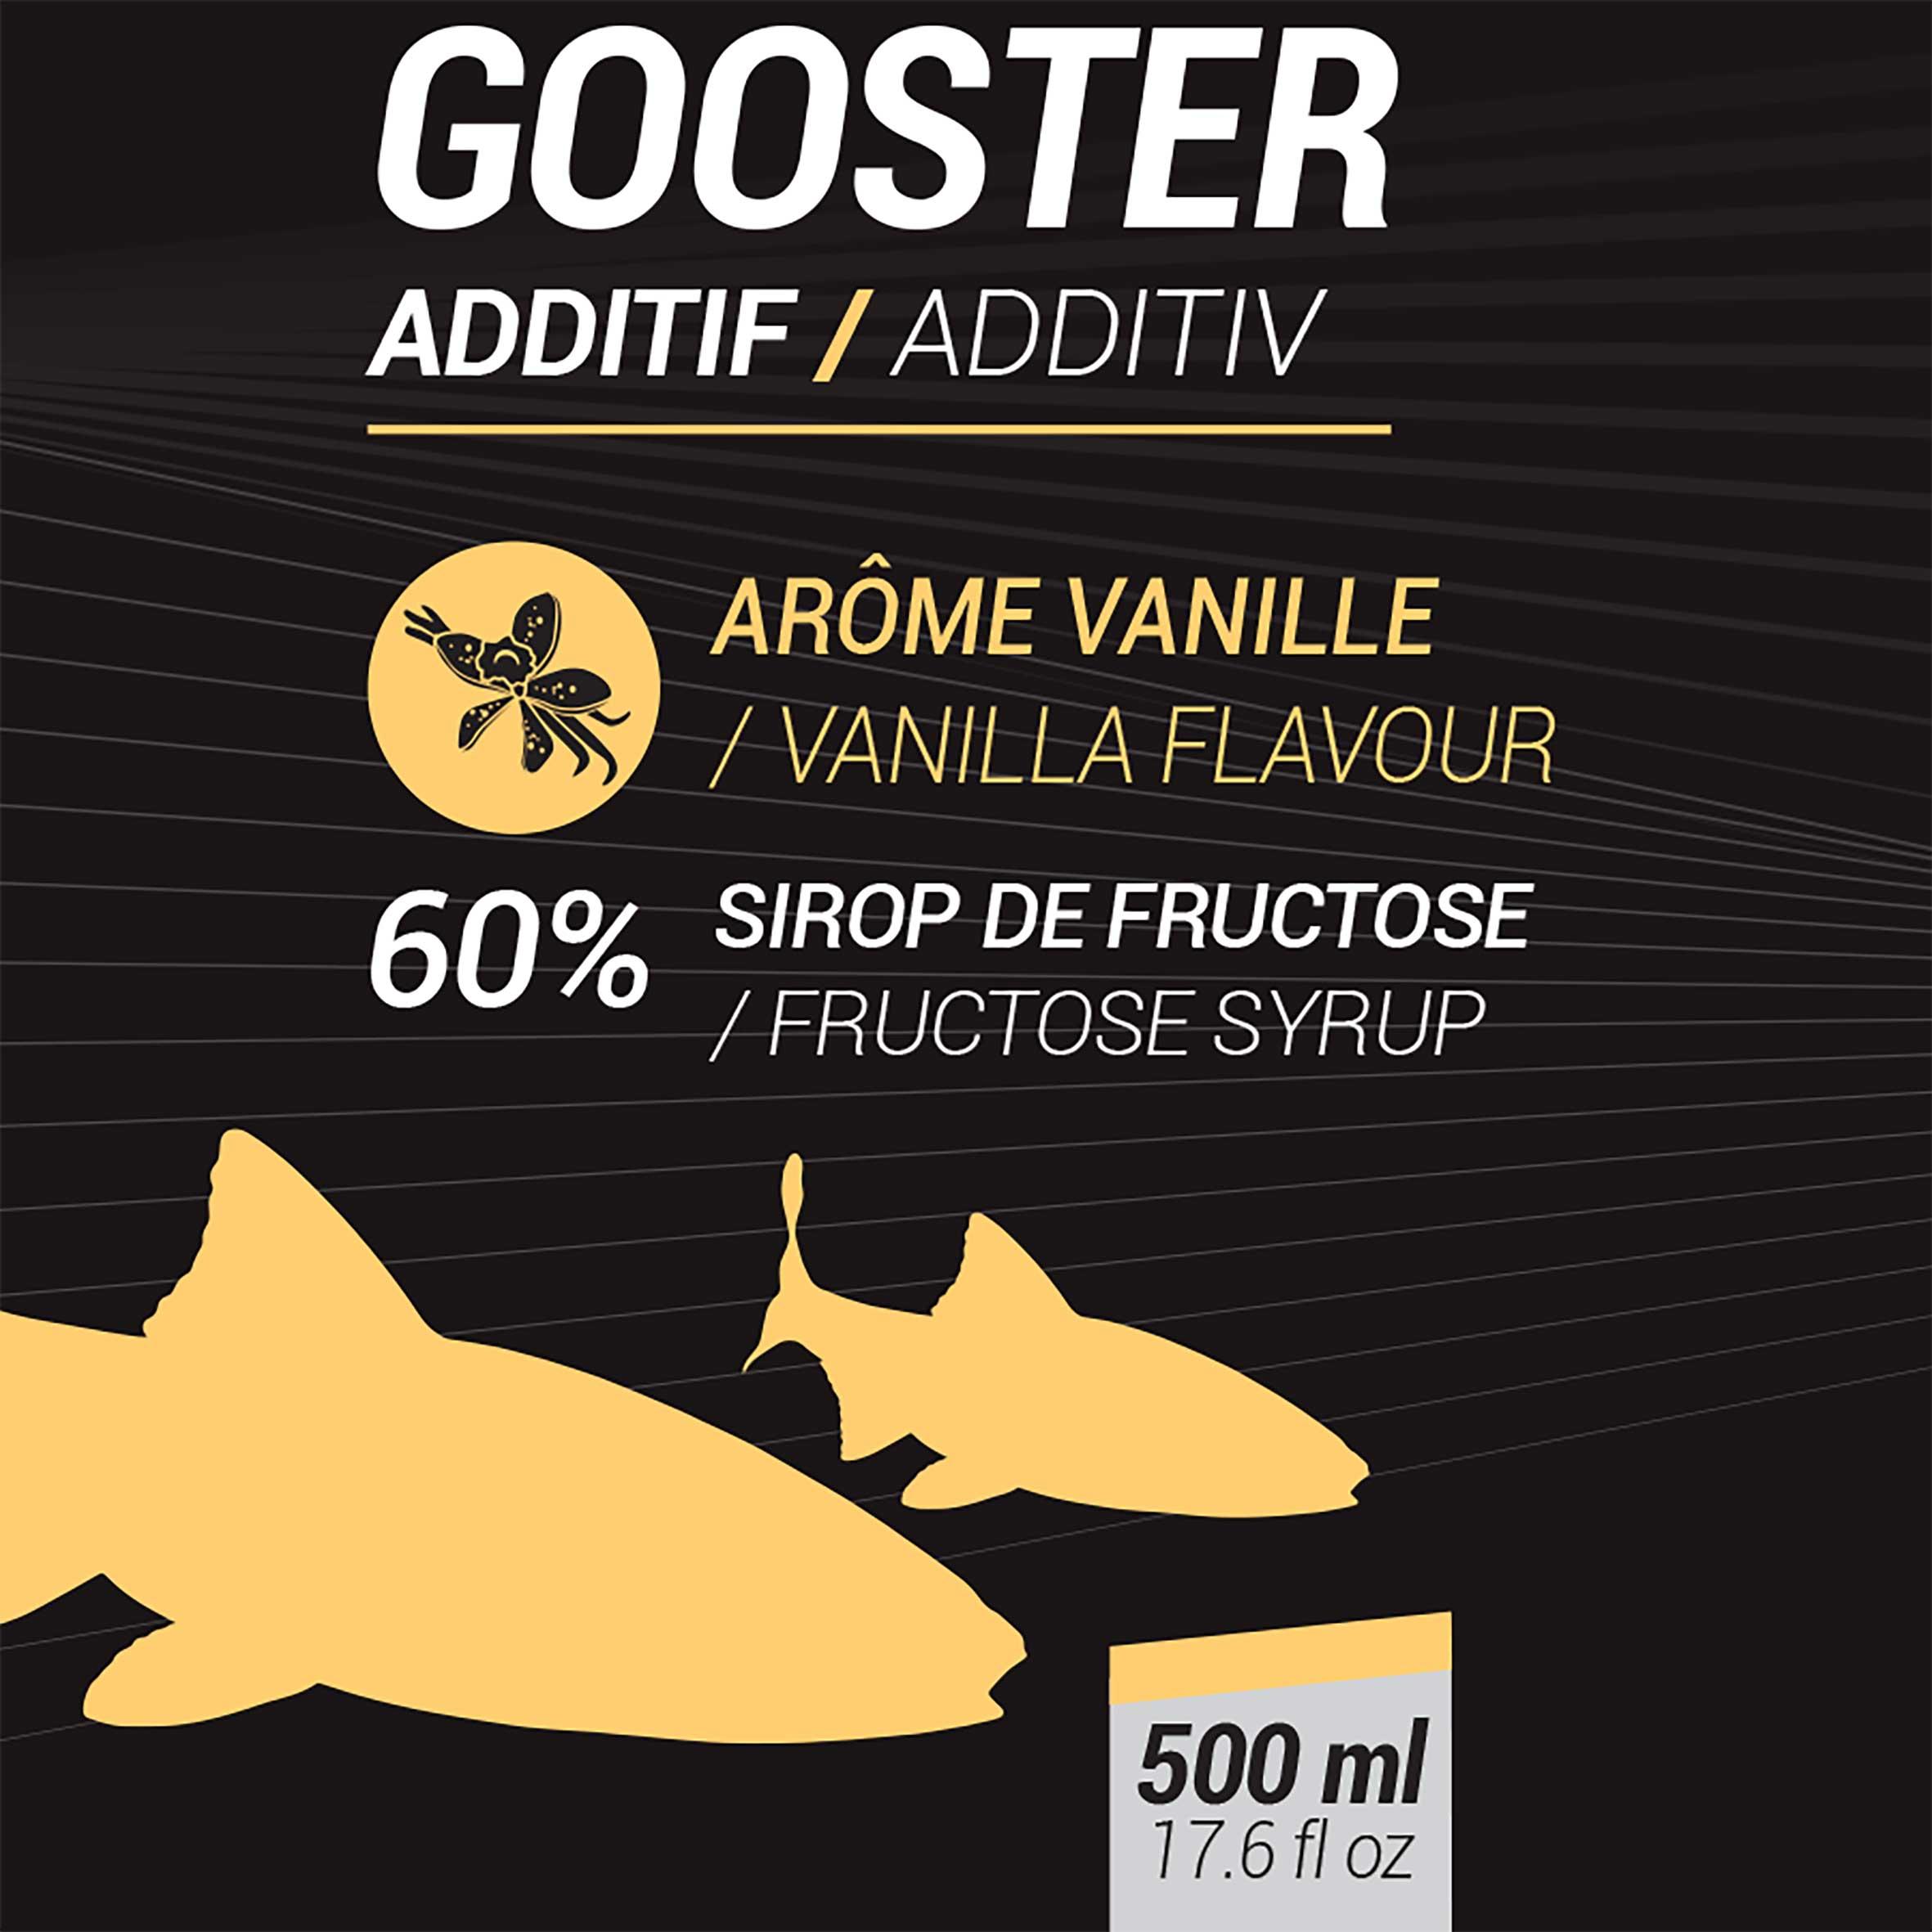 Gooster Additiv Still Fishing Liquid Additive Monster Crab 500ml